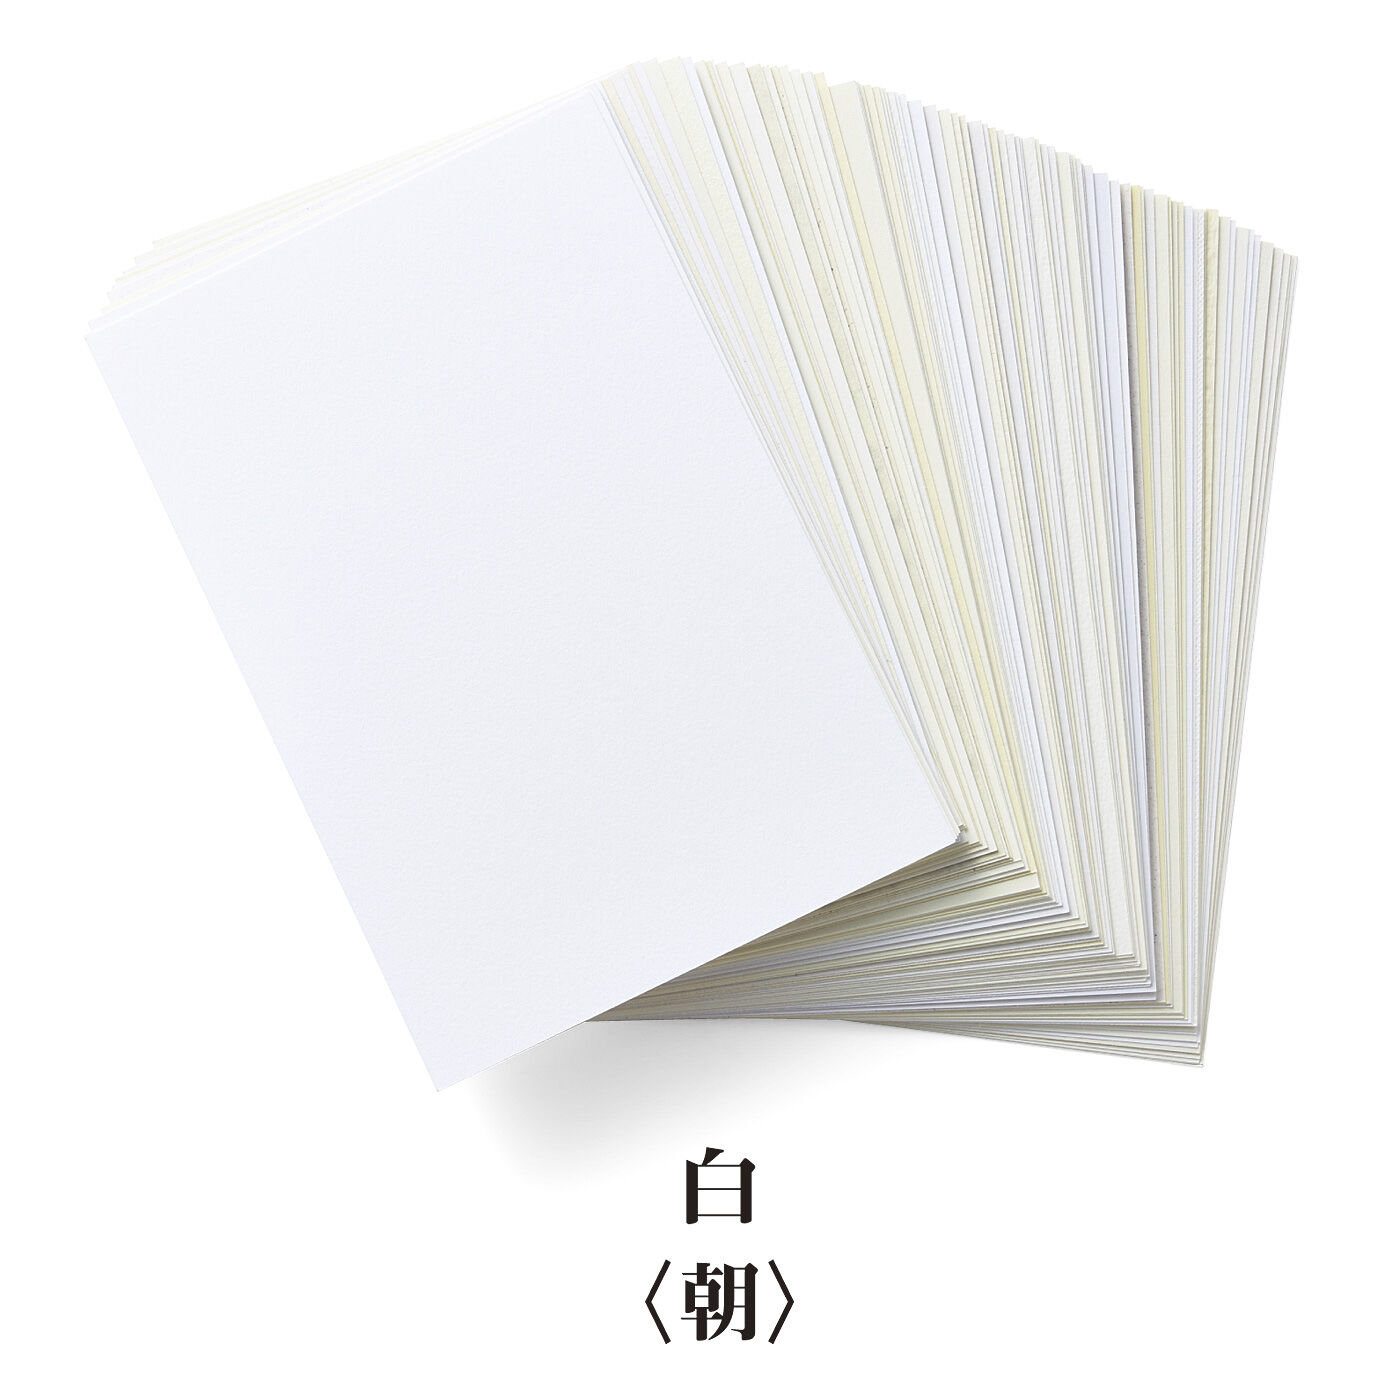 500色の色えんぴつ TOKYO SEEDS 紙の専門商社 竹尾が選ぶ 500種類の紙